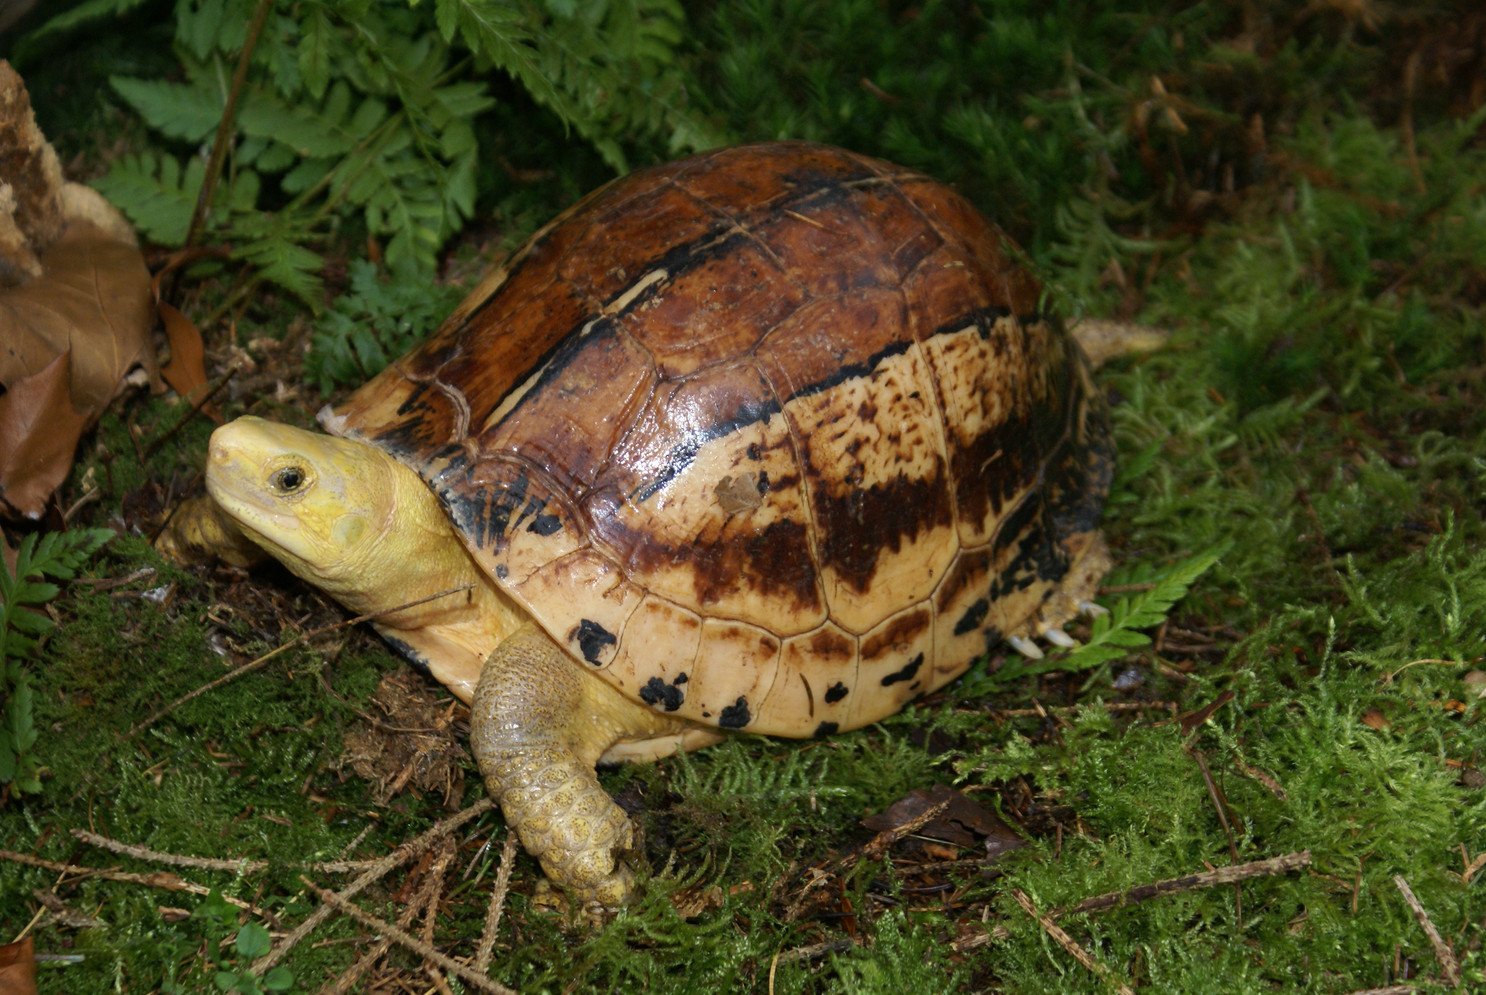 Ghi nhận loài rùa đặc biệt quý hiếm tại rừng đặc dụng Đèo Cả, tỉnh Phú Yên